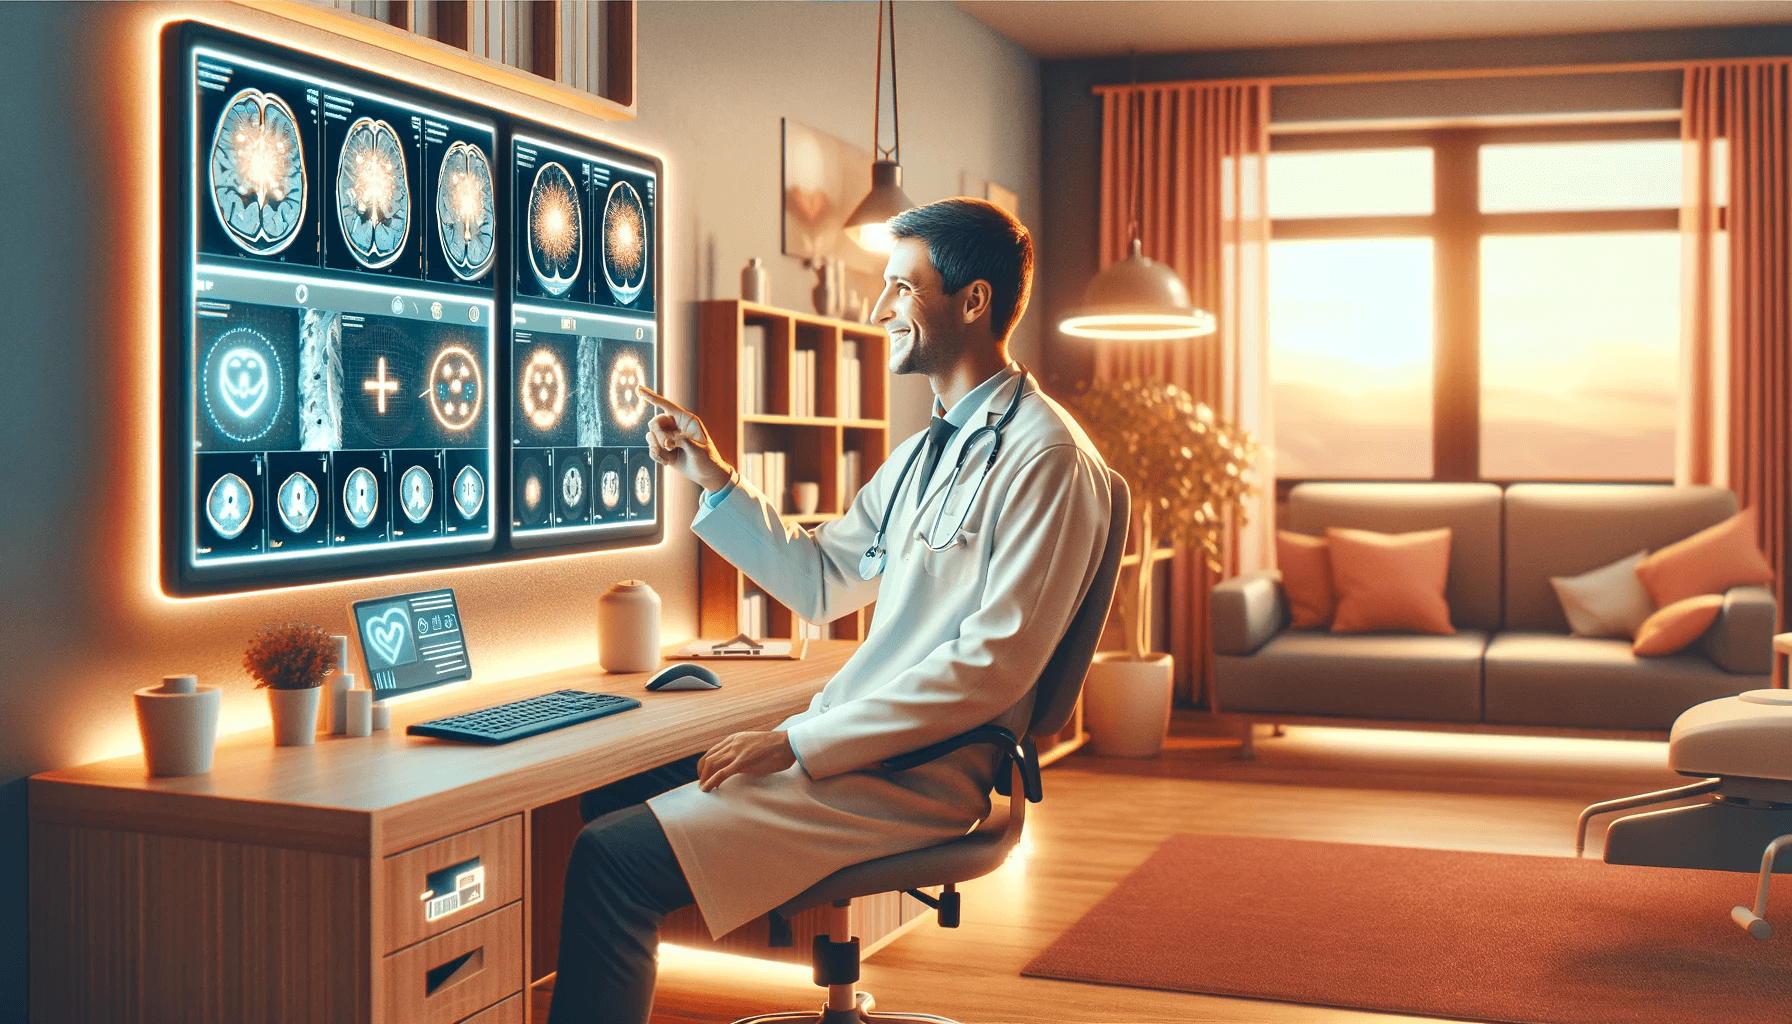 Radiolog pracuje przy komputerze z obrazami medycznymi w ciepłym, przytulnym wnętrzu radiologicznym.